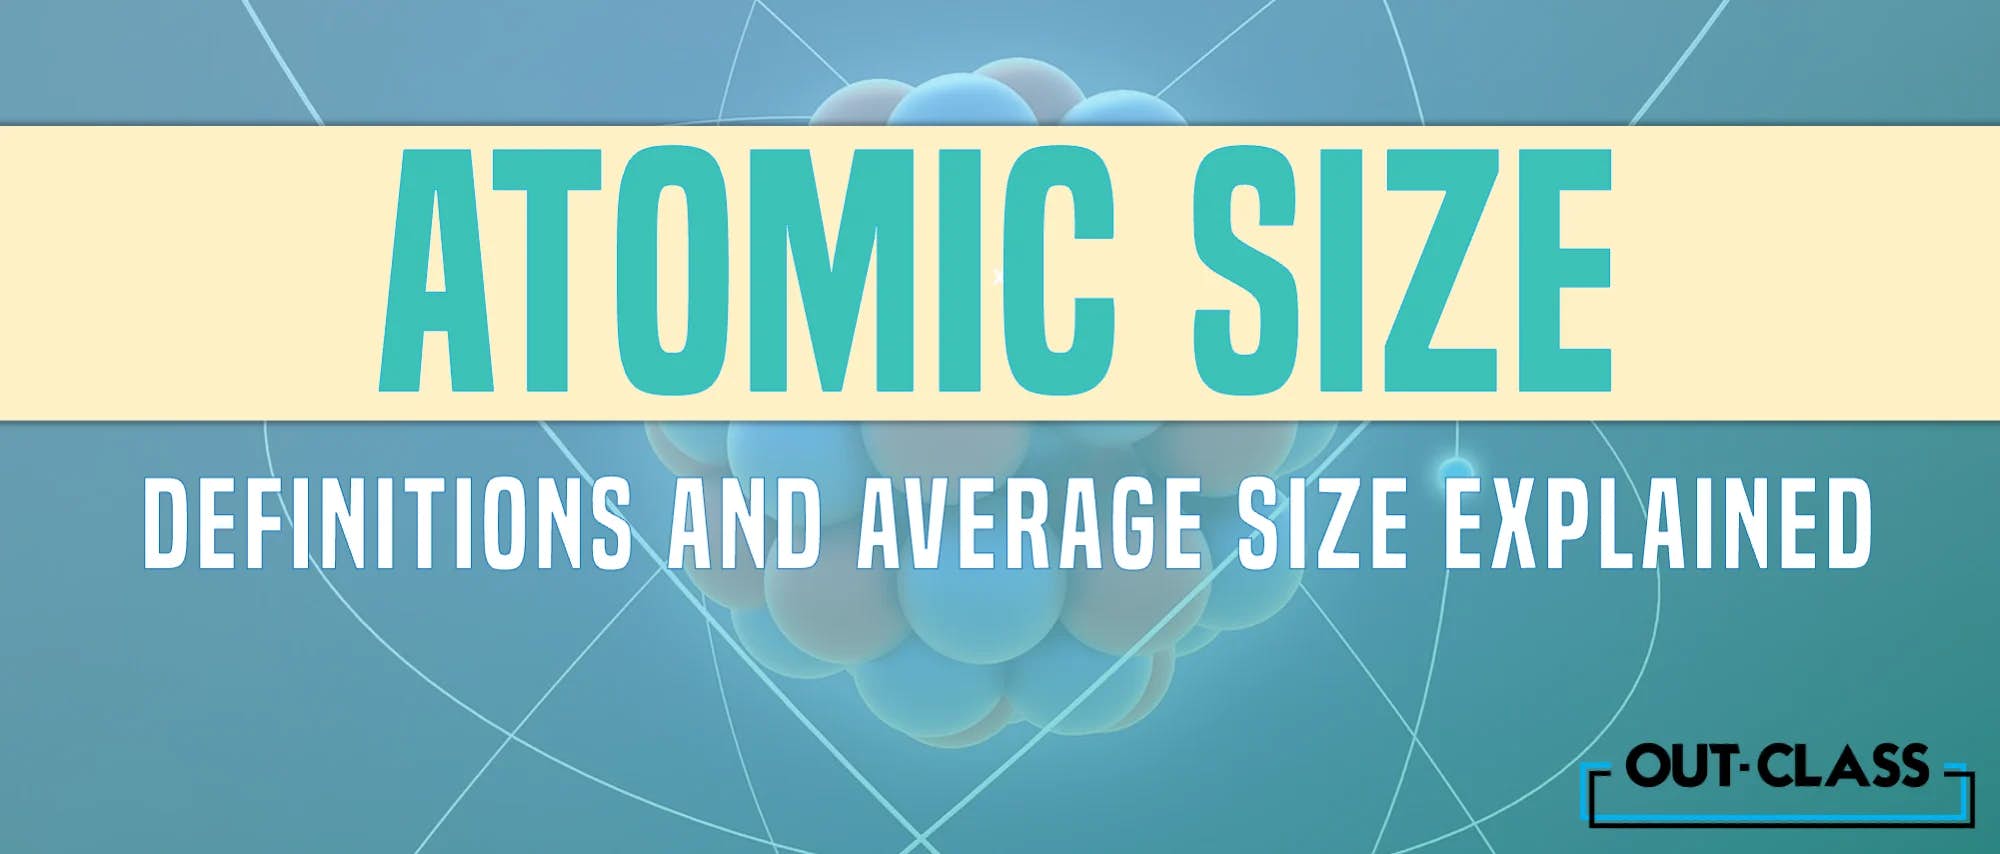 Atomic Size Explained!